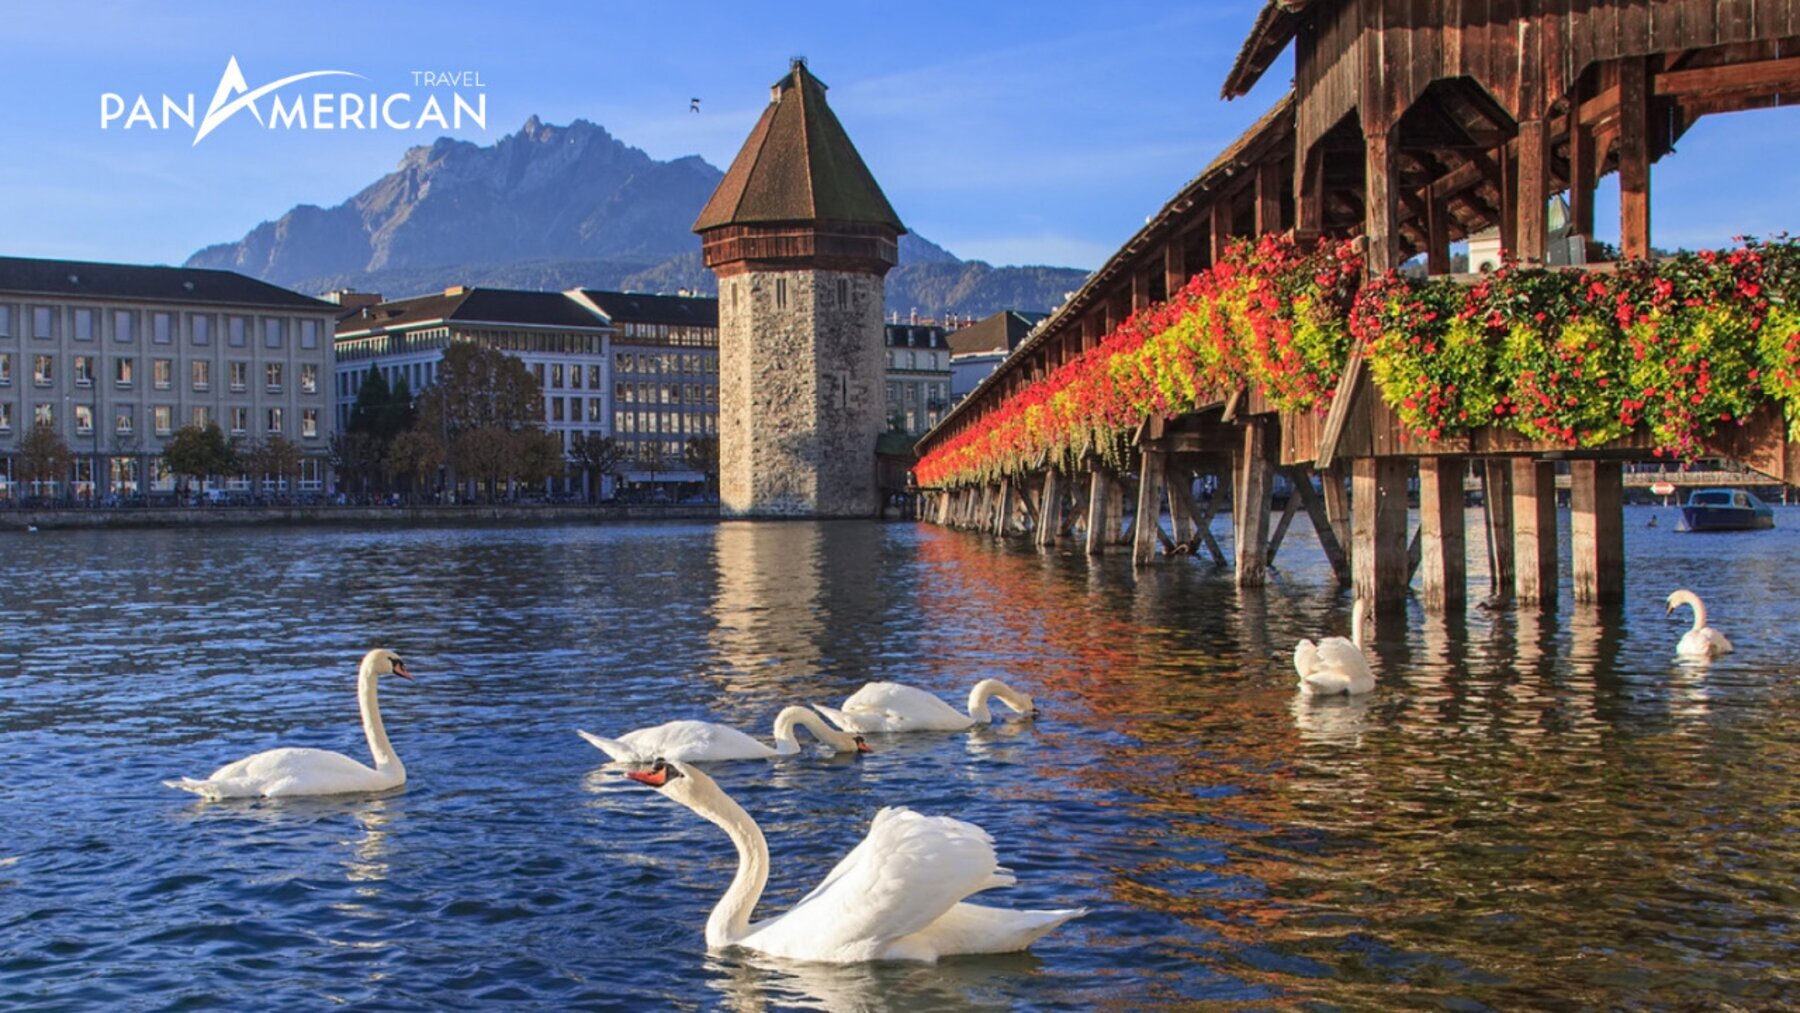 Khung cảnh lãng mạn tuyệt đẹp ở Lucerne